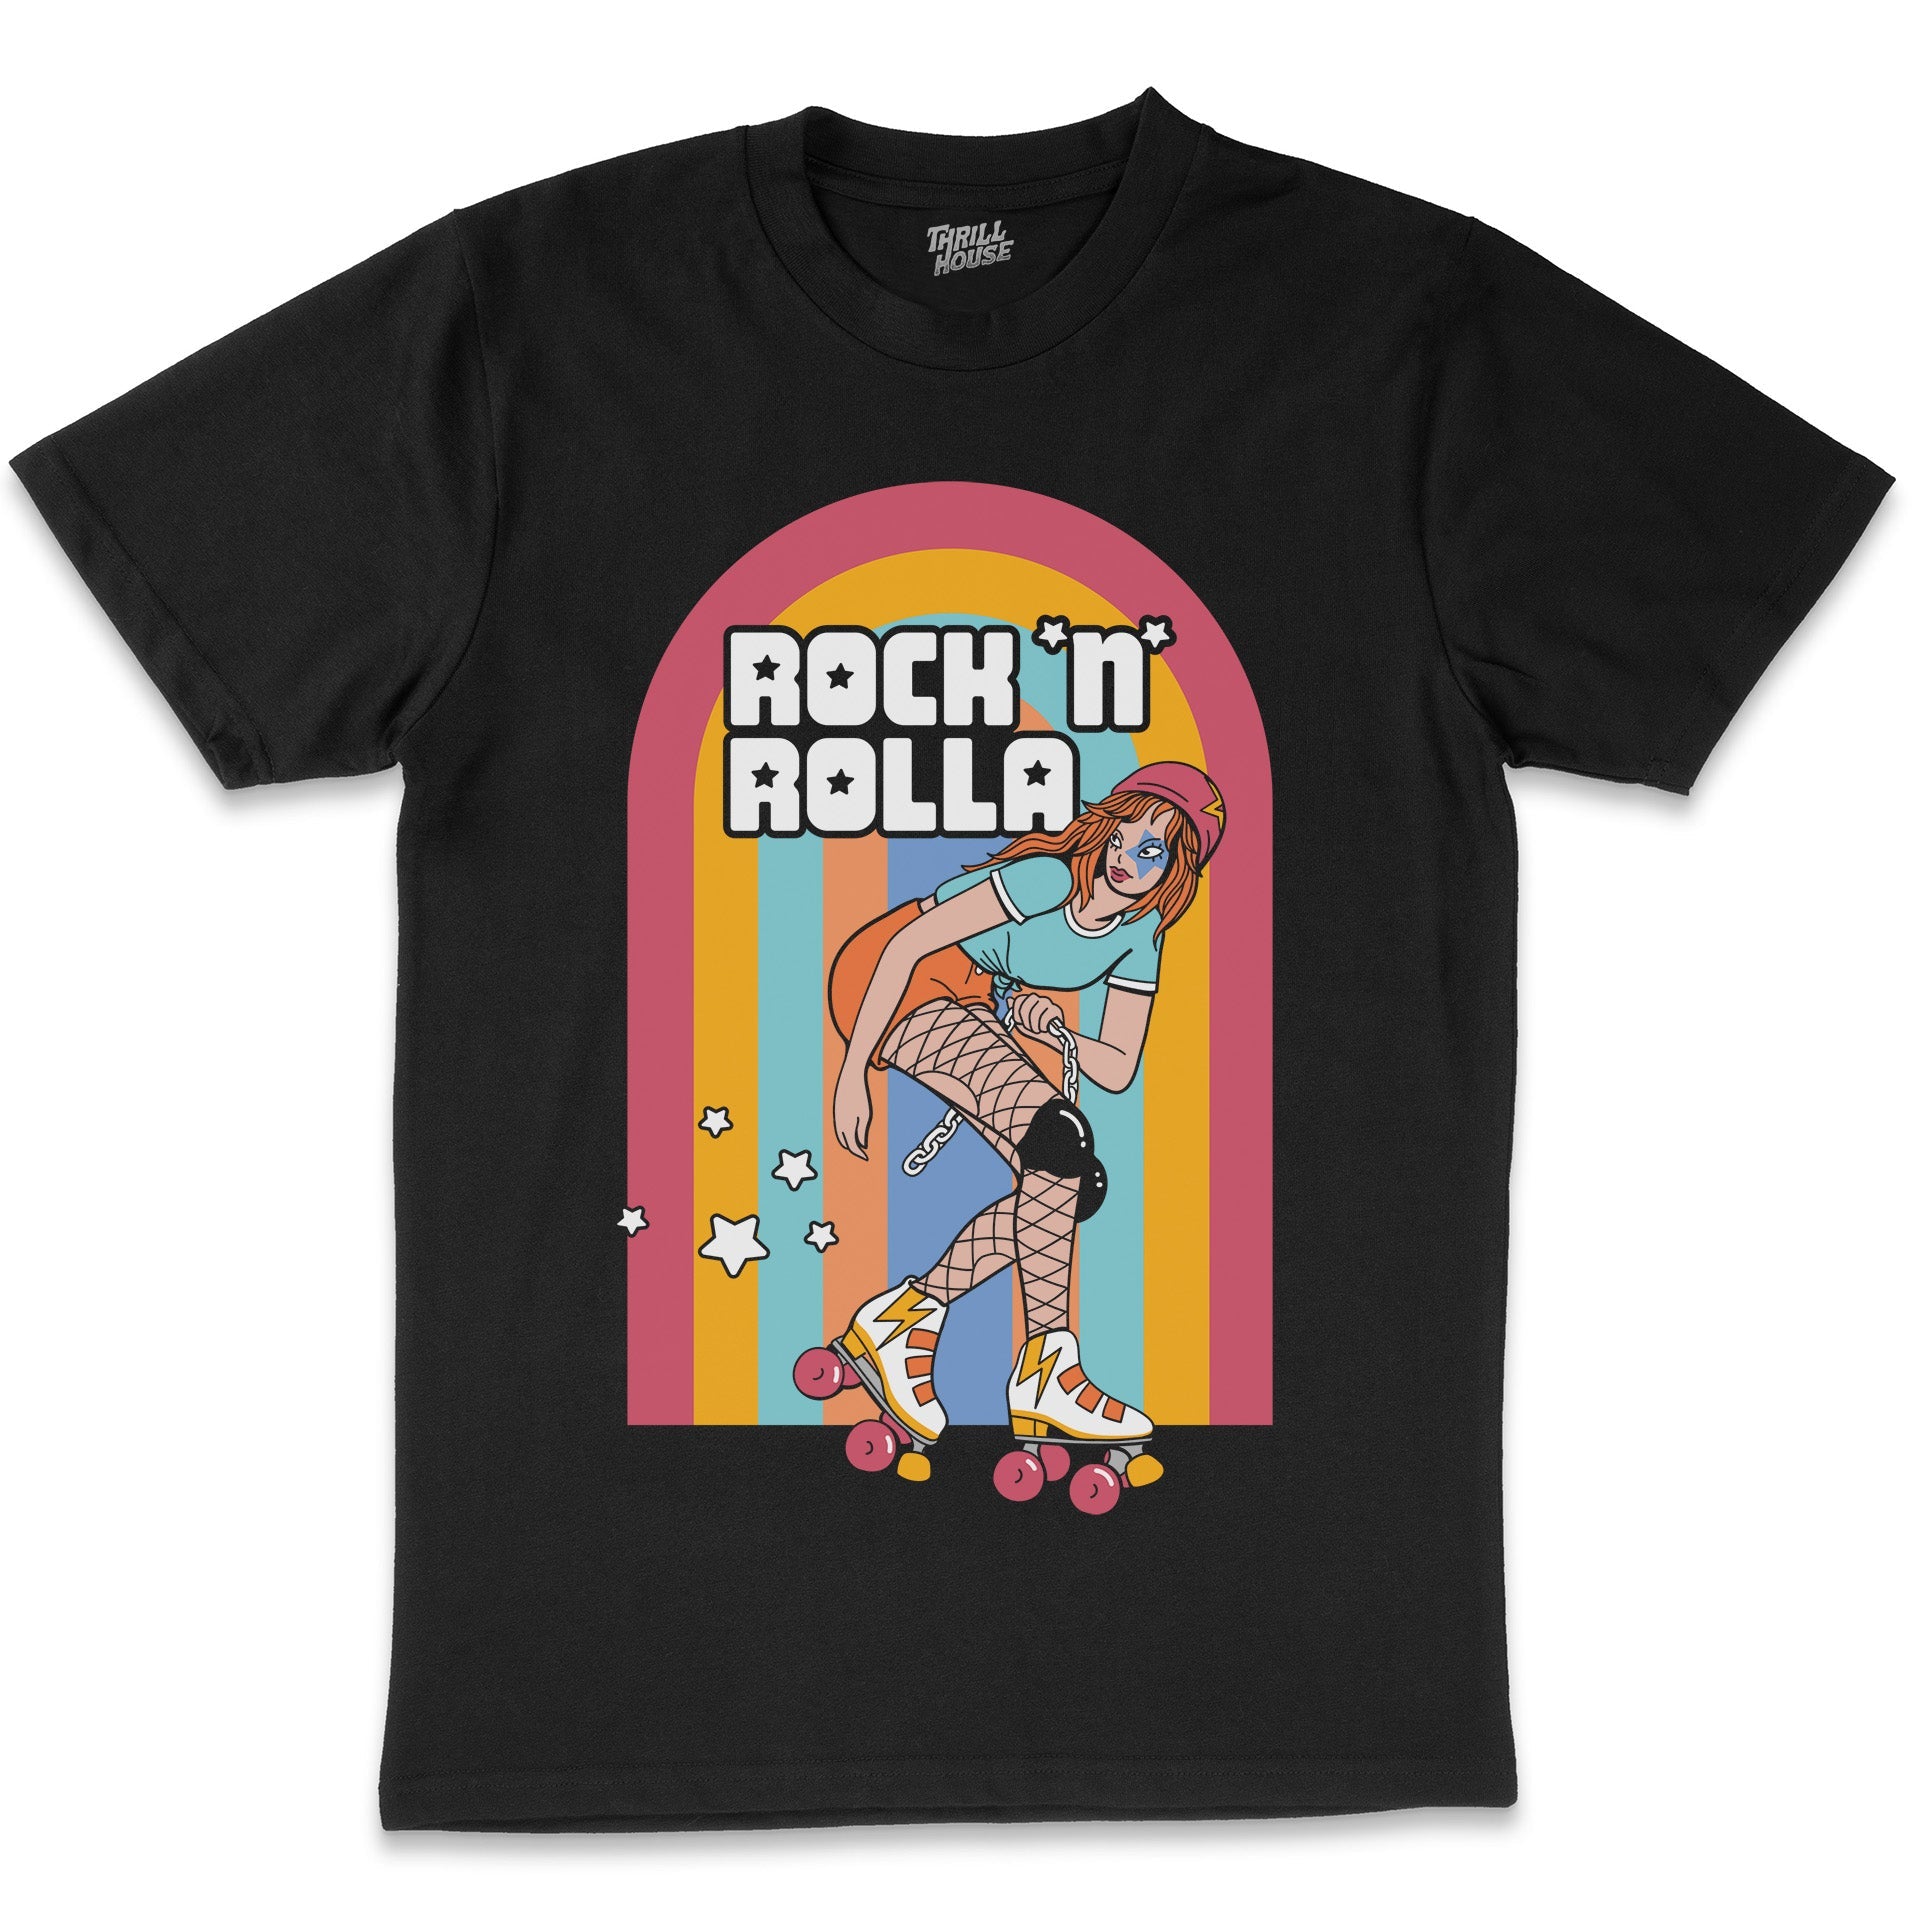 Rock N Rolla 80s Roller Skating Roller Derby Retro Vintage Cotton T-Shirt